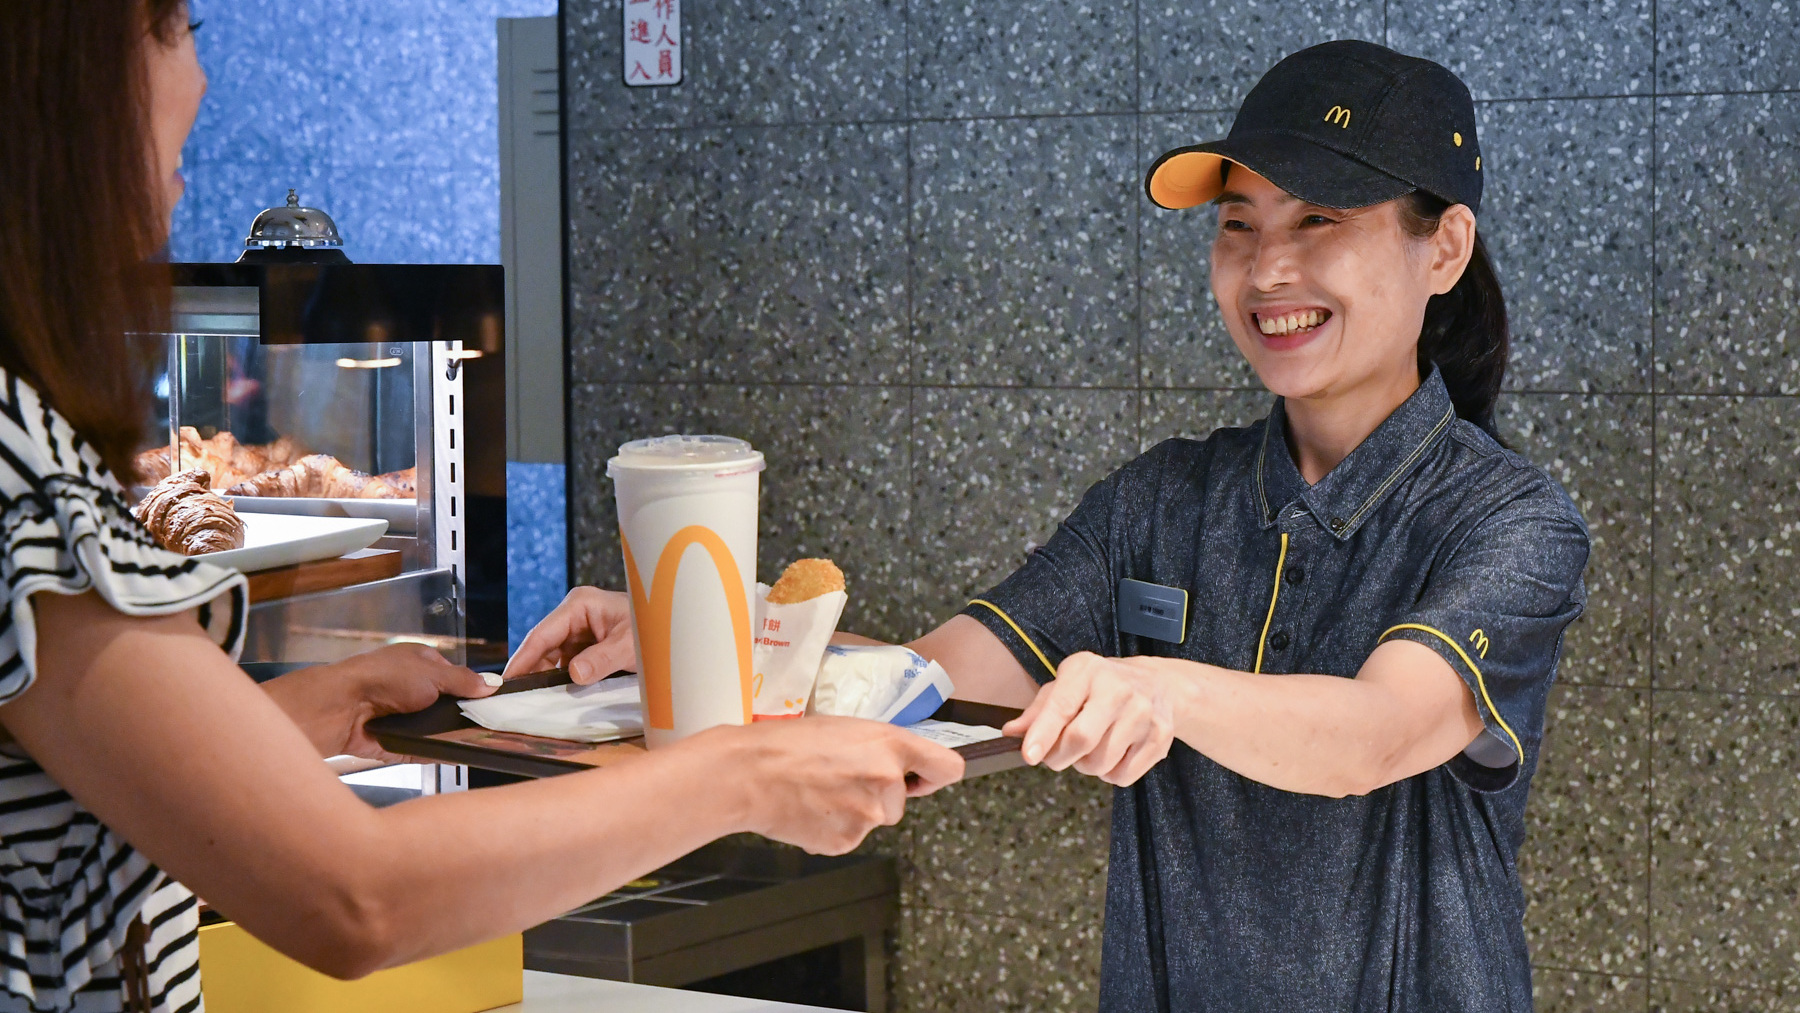 麥當勞提供正職工作的好選擇  無餐飲經驗也能培訓成為管理職 